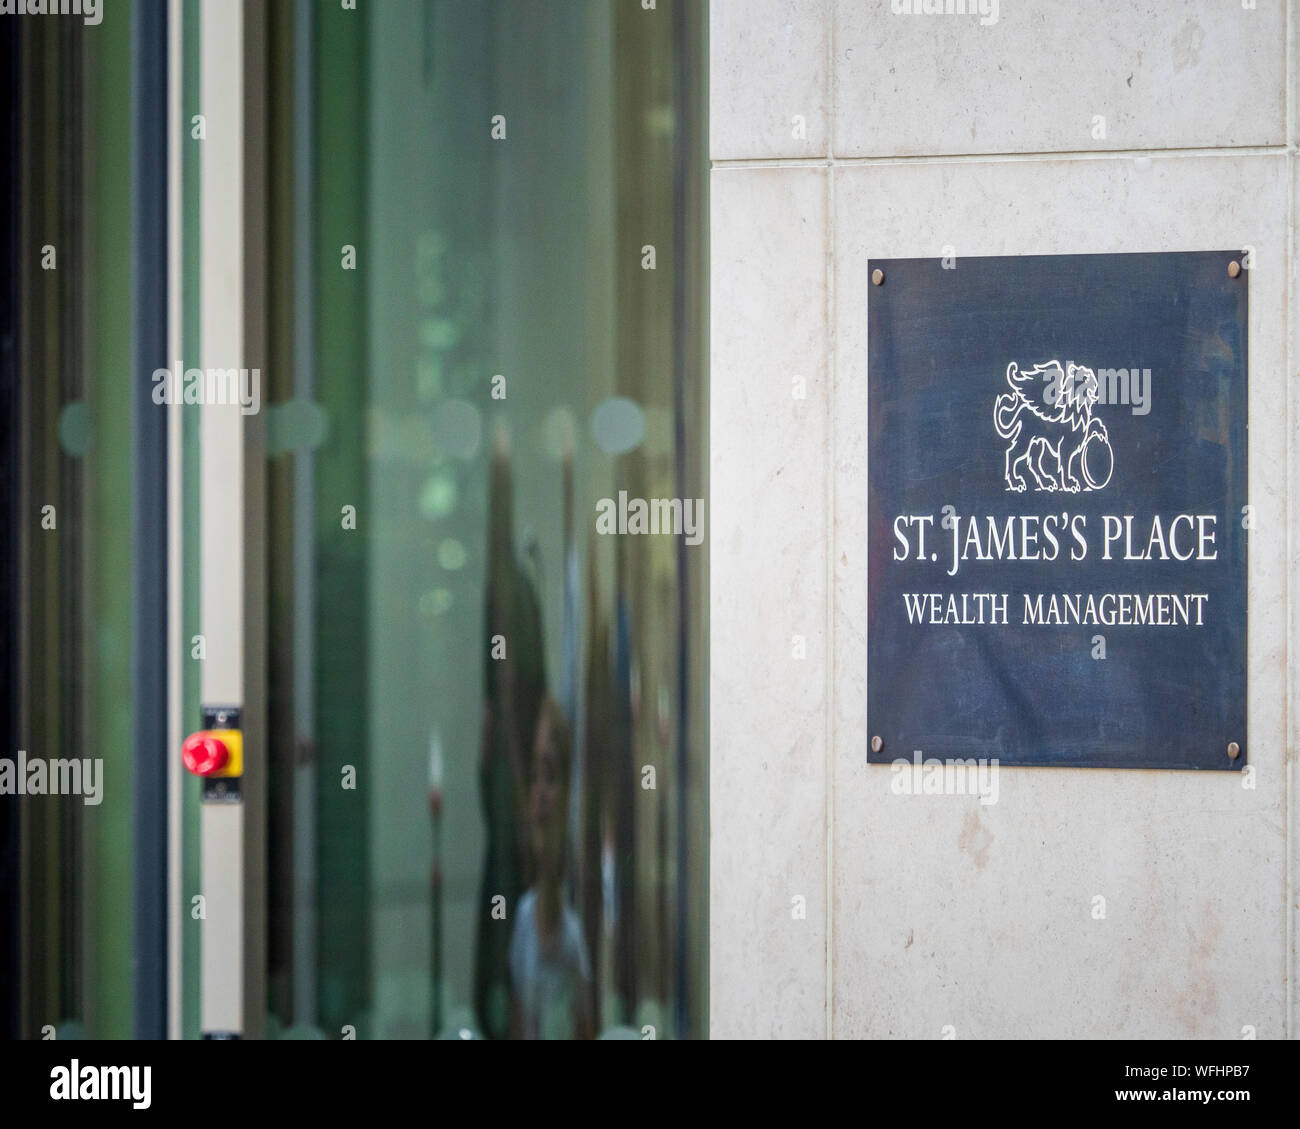 St James's Place Wealth Management company nella città di Londra il quartiere finanziario. Foto Stock